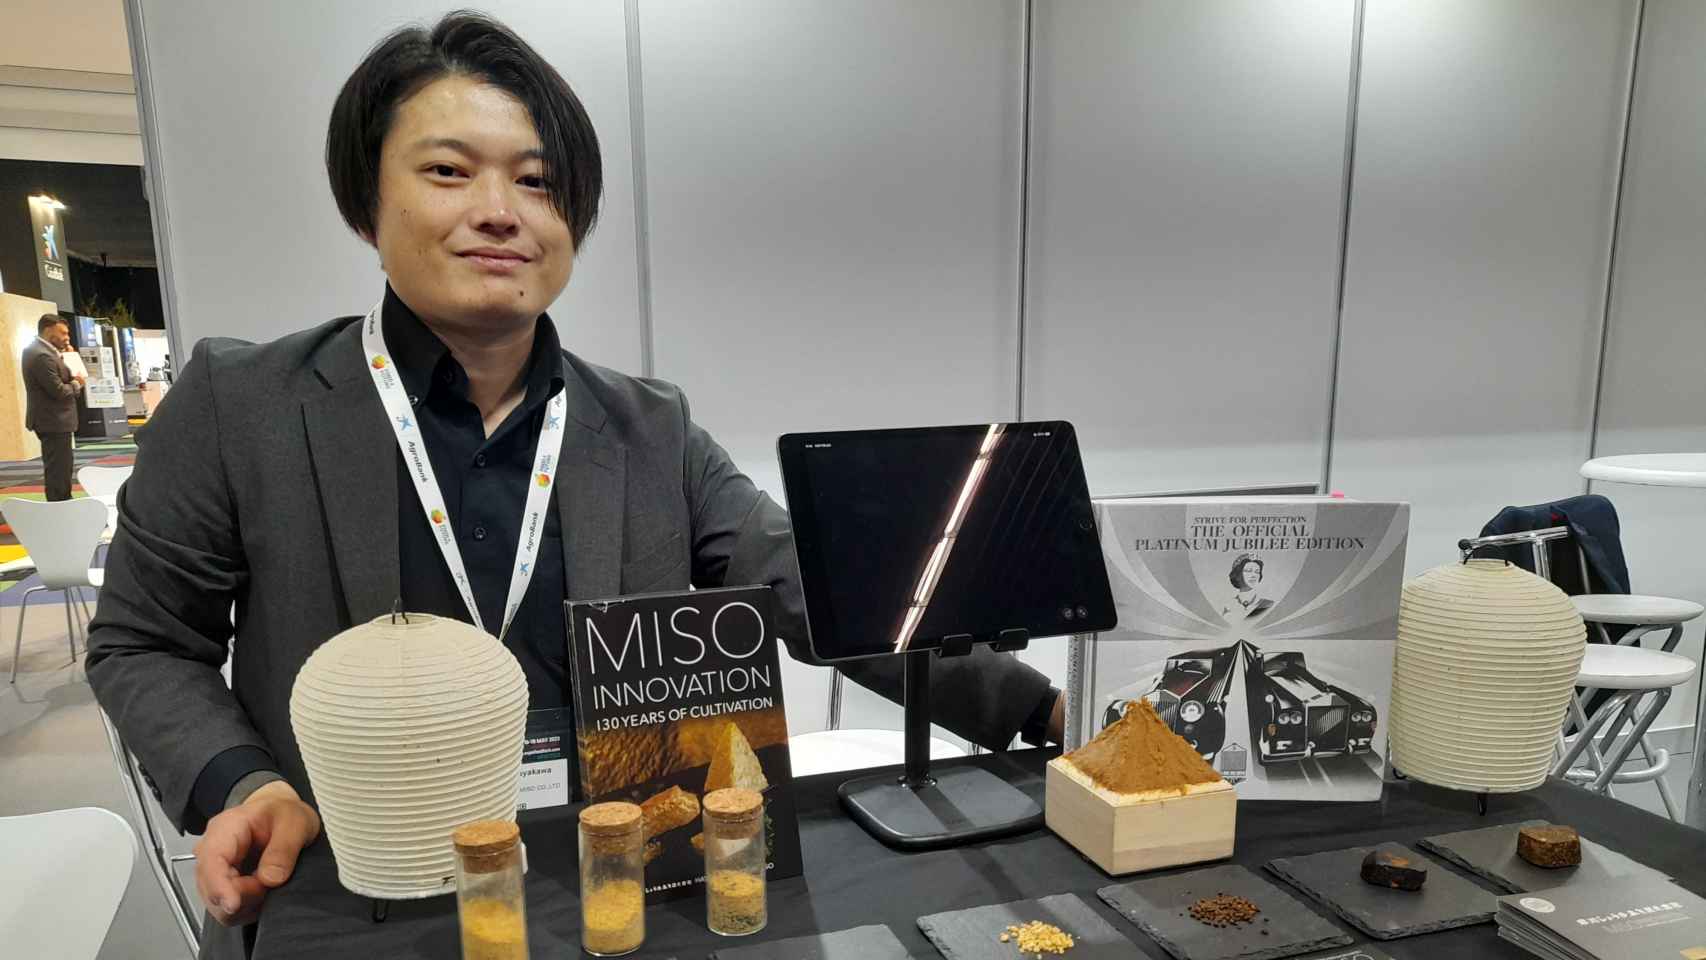 早川醤油味噌、あるいは日本の新しい「フードテック」文化において古来の技術とイノベーションをどのように組み合わせるか